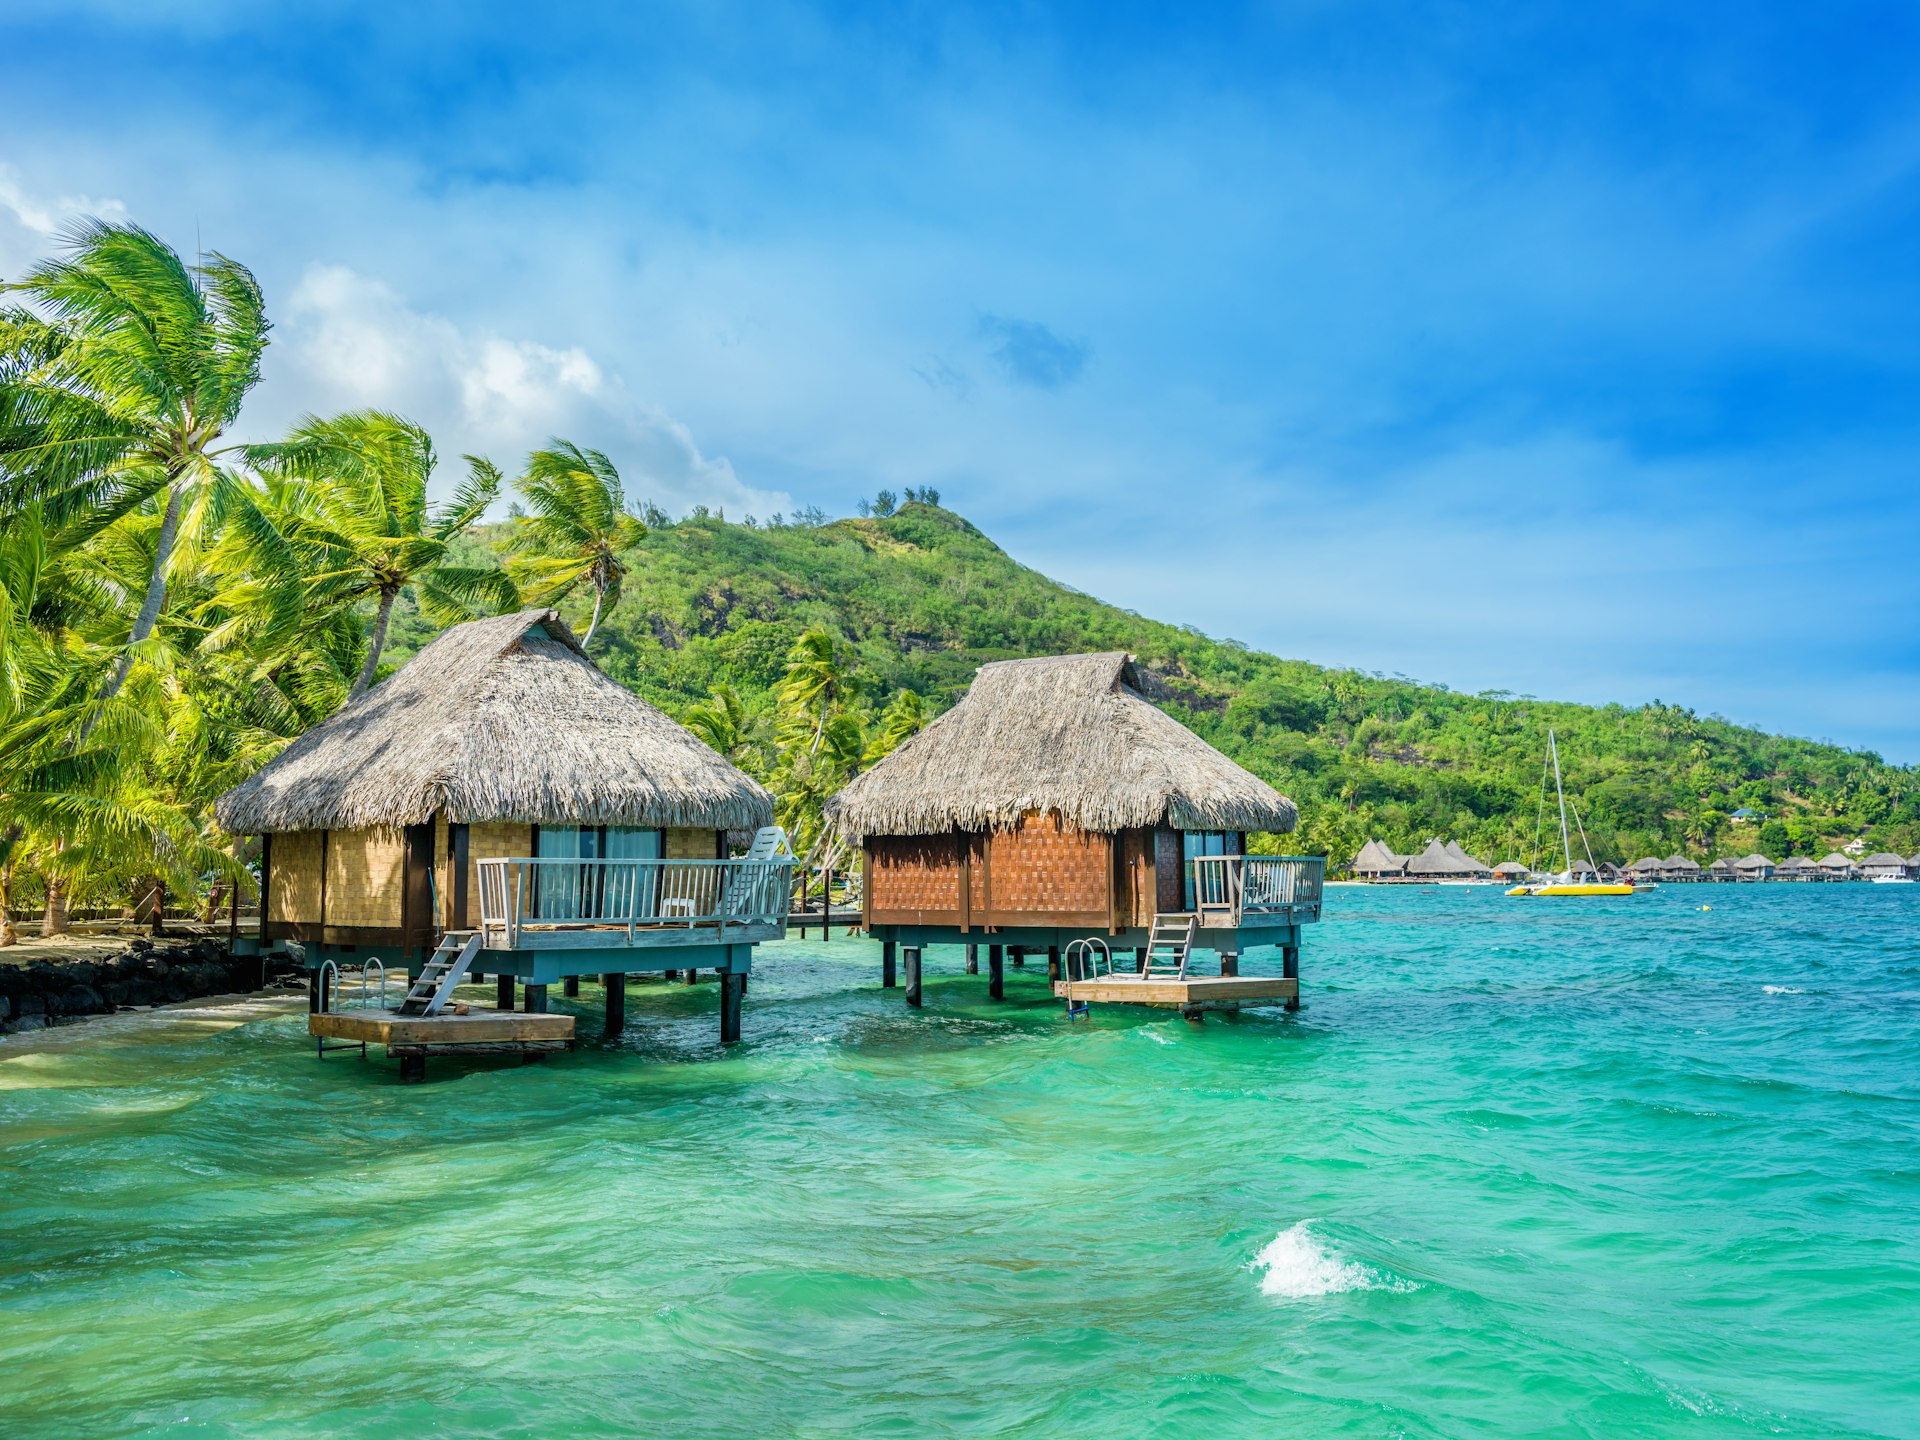 Dream Holiday Luxury Resort, Tahiti